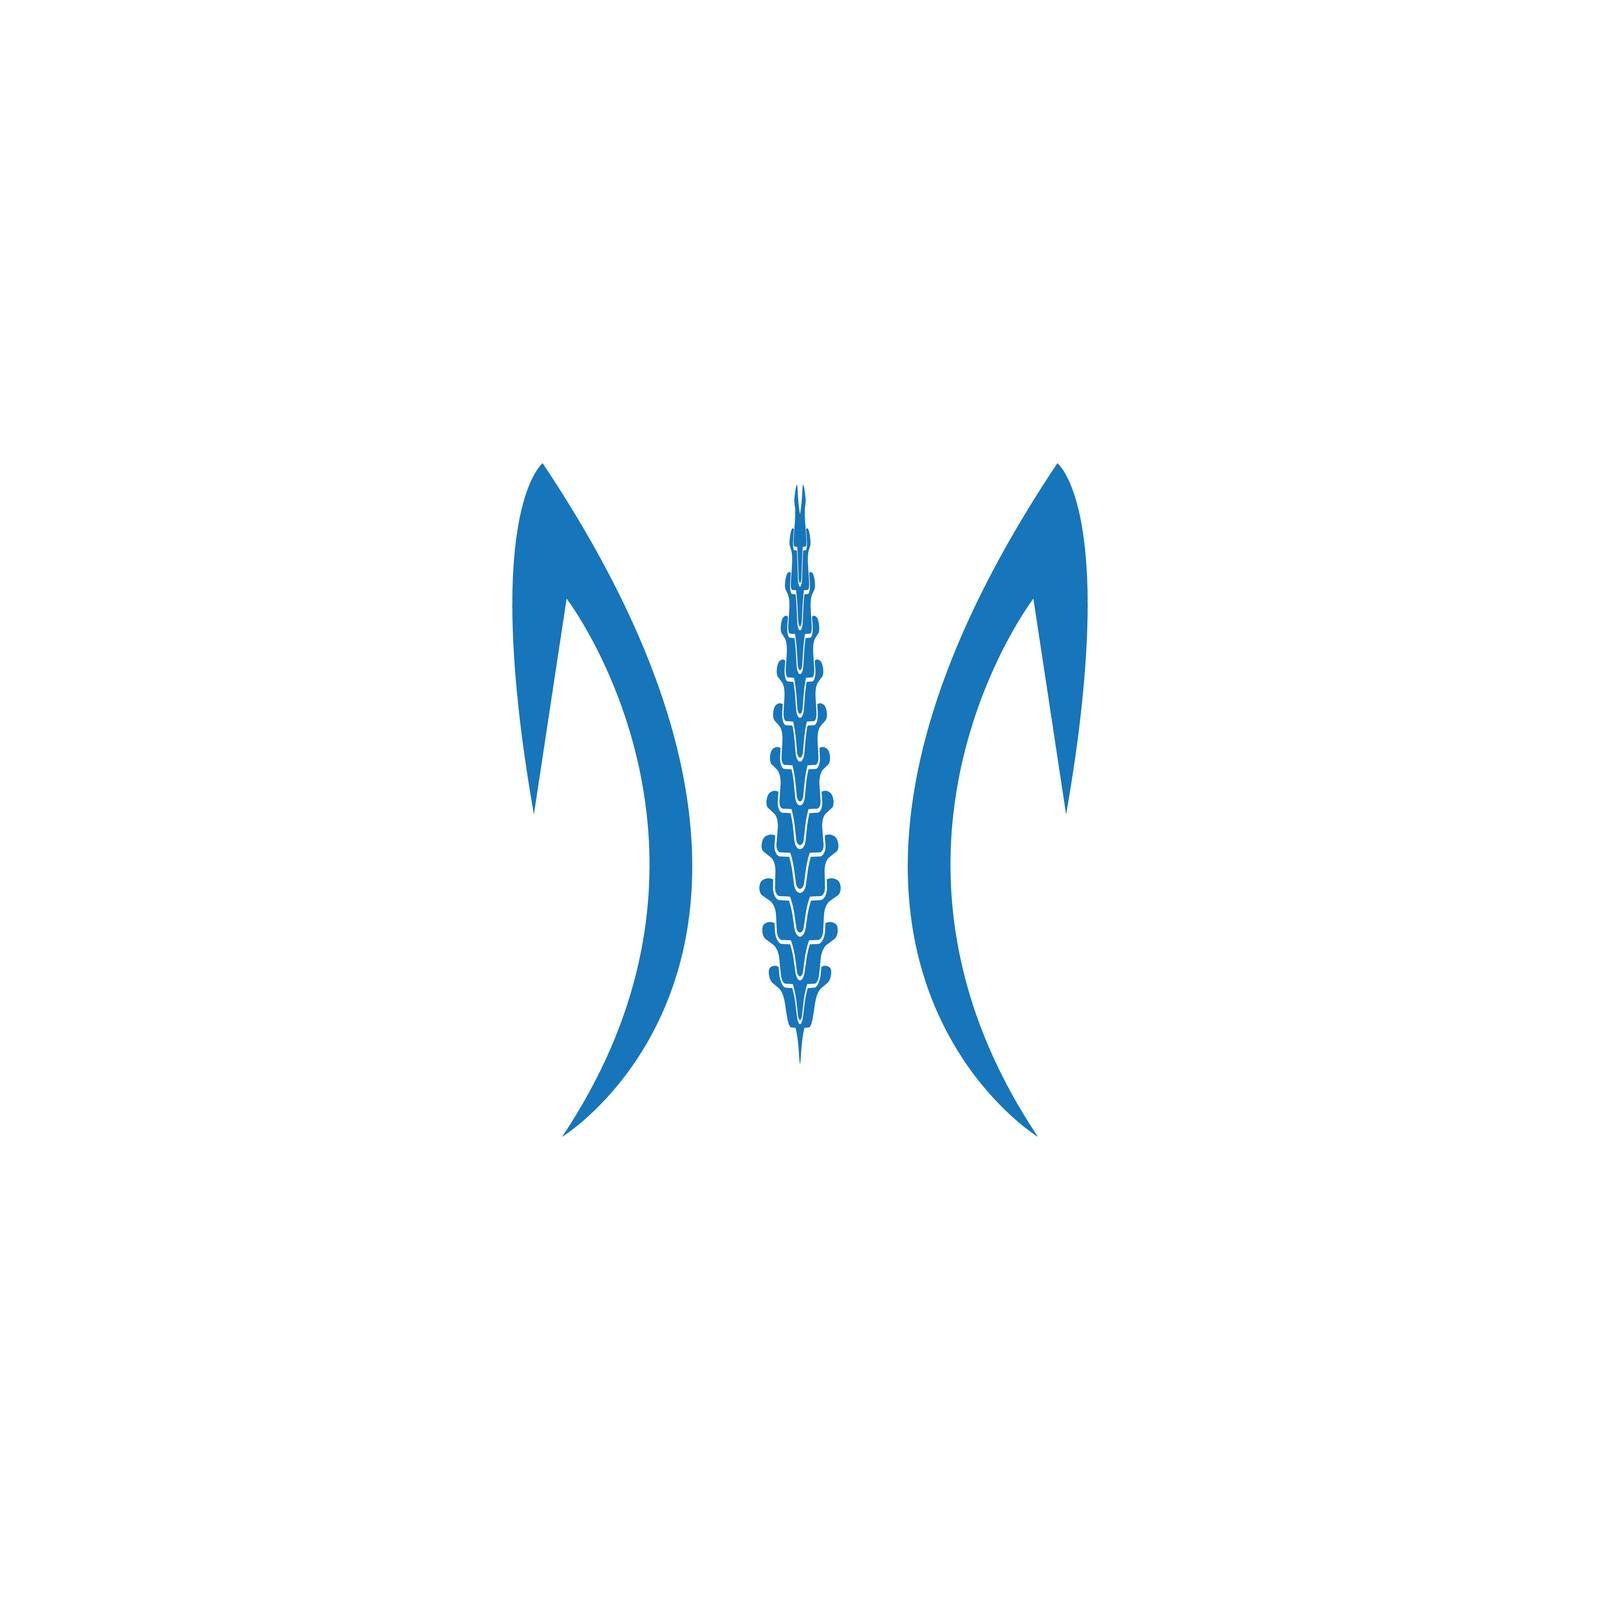 Spine diagnostics symbol by Graphicindo